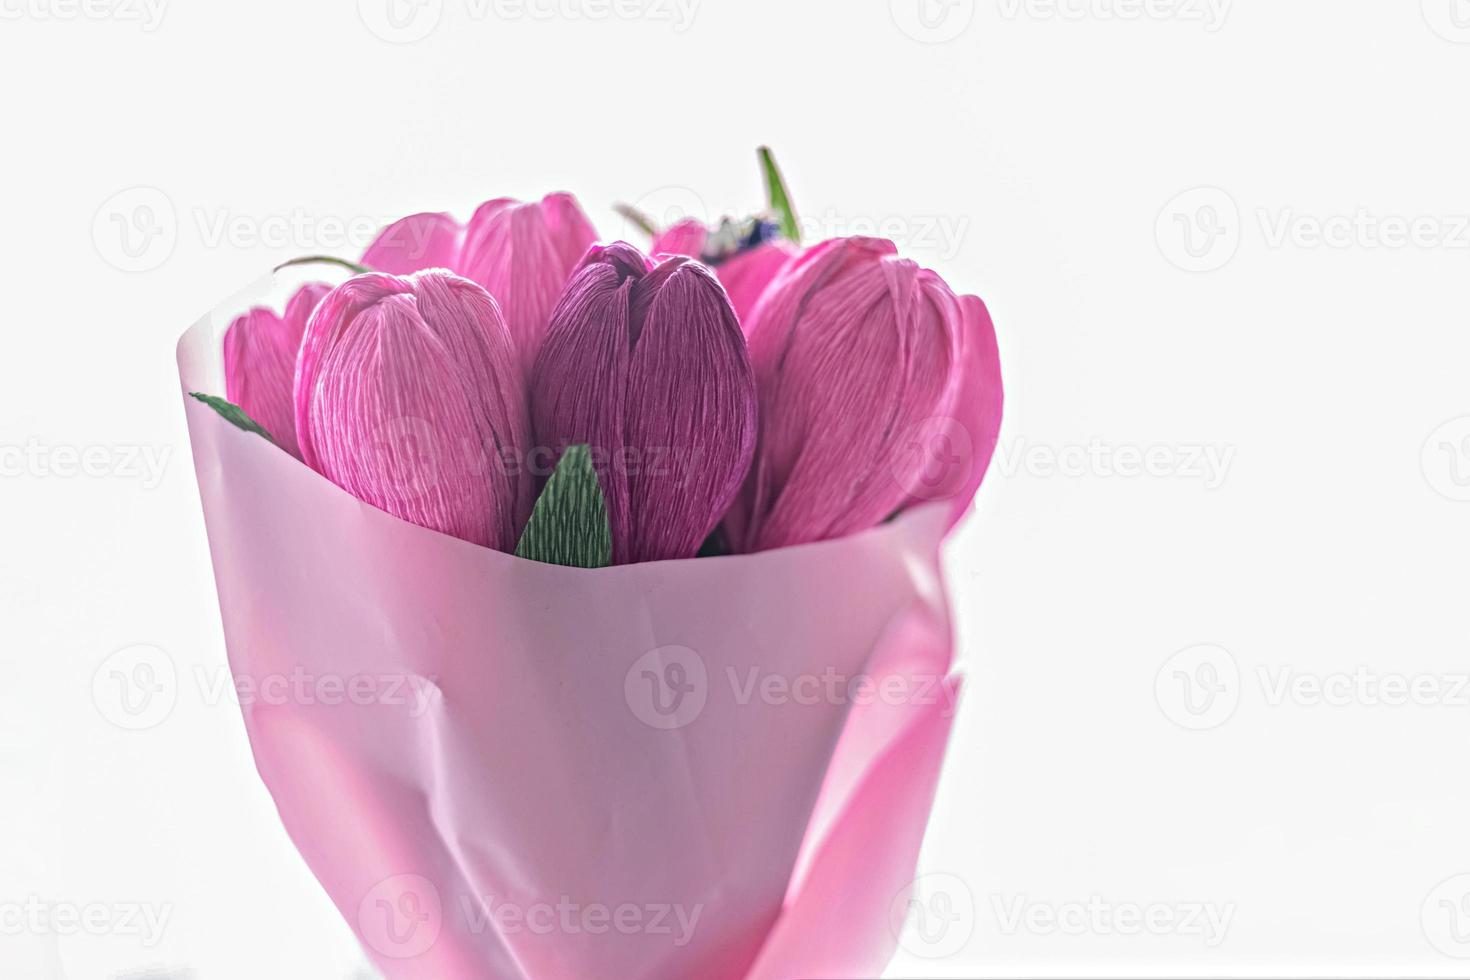 en bukett blommor från färgat korrugerat papper i form av tulpaner foto